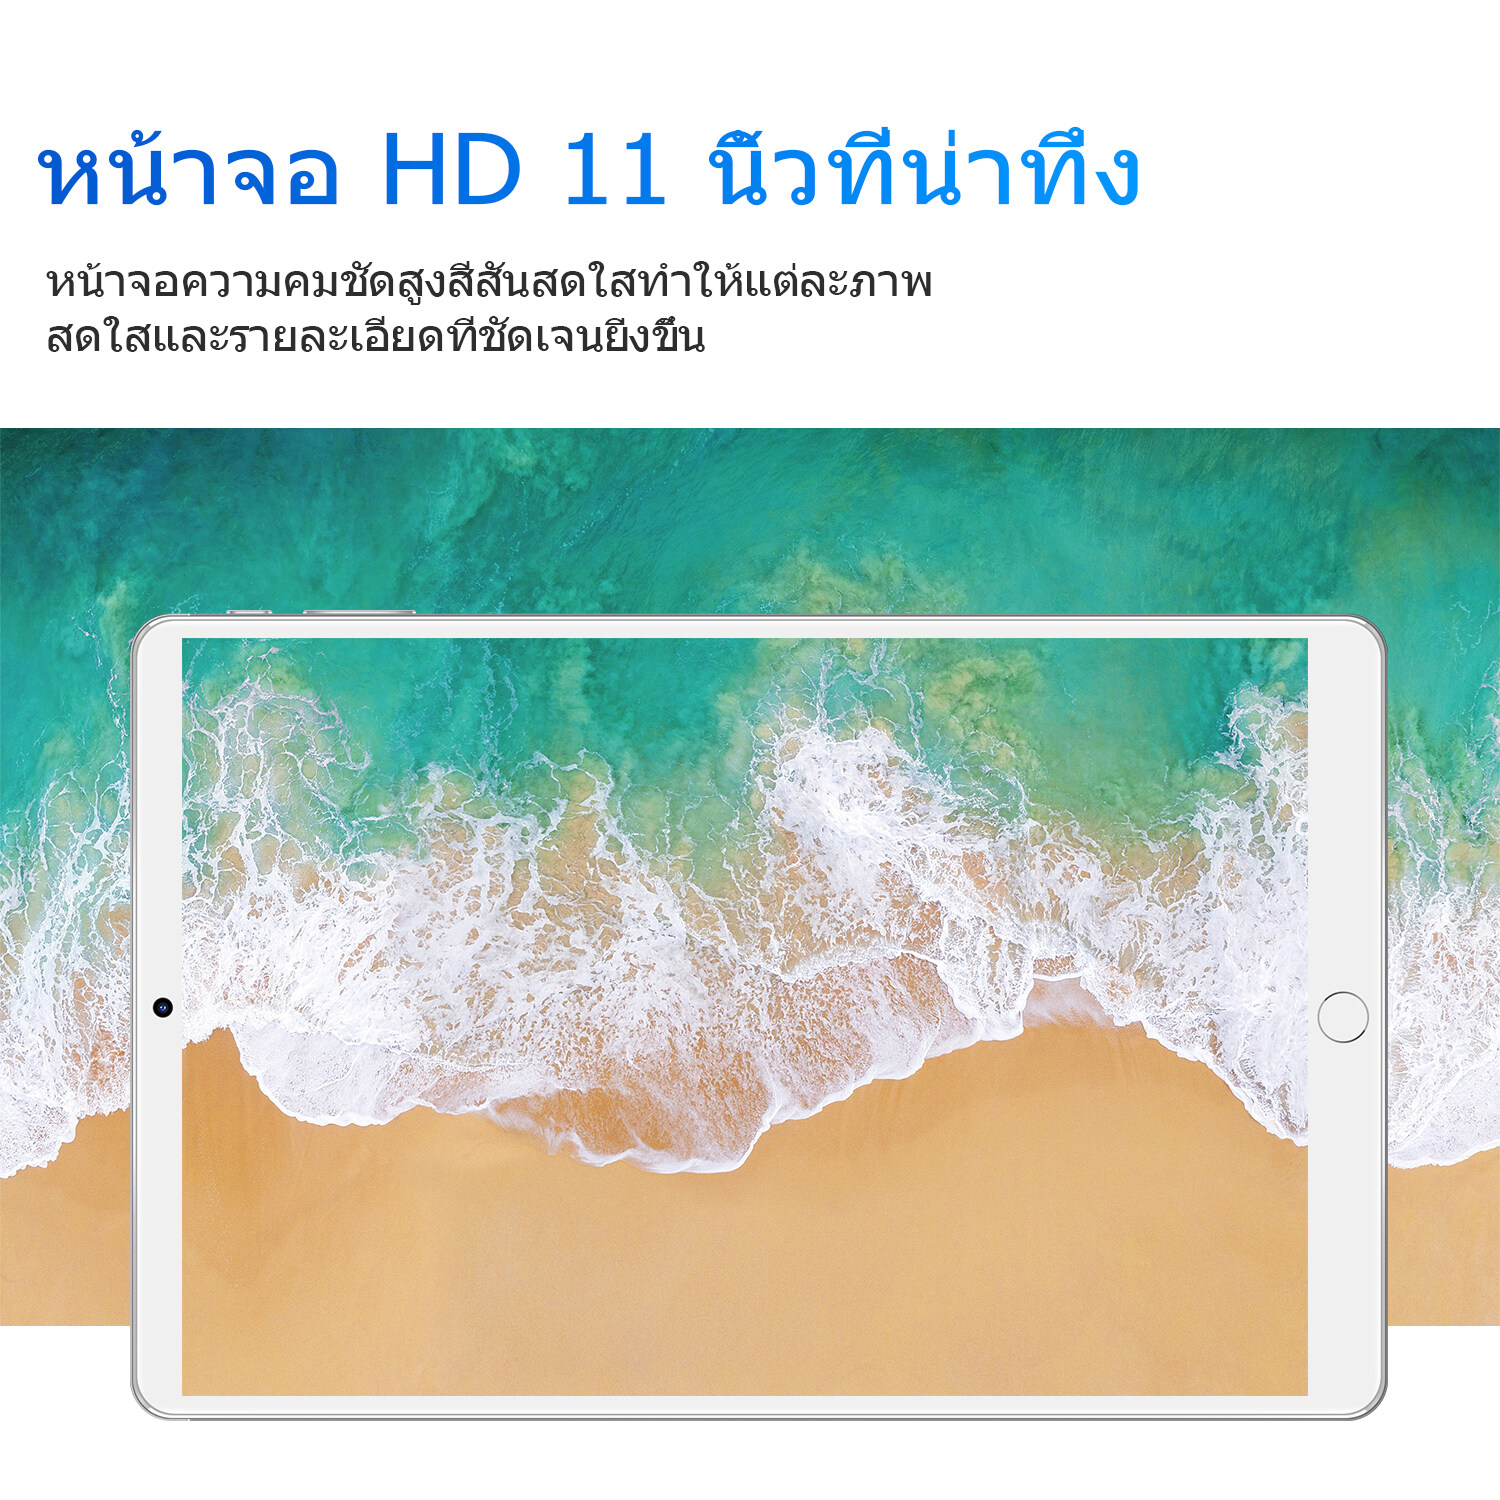 เกี่ยวกับสินค้า （ลดเคลียร์สต๊อก）แท็บเล็ต realmi Tablet โทรได้ 4g/5G แท็บเล็ตถูกๆ 5G Andorid Tablet จัดส่งฟรี แทบเล็ตราคาถูก รองรับภาษาไทย หน่วยประมวลผล แท็บเล็ตสำหรับเล่นเกมราคาถูก RAM8G ROM512G ไอเเพ็ด แท็บเล็ต 8800mAh แท็บเล็ตราคาถูกๆ แท็บเล็ตราคาถูกรุ่นล่าสุด